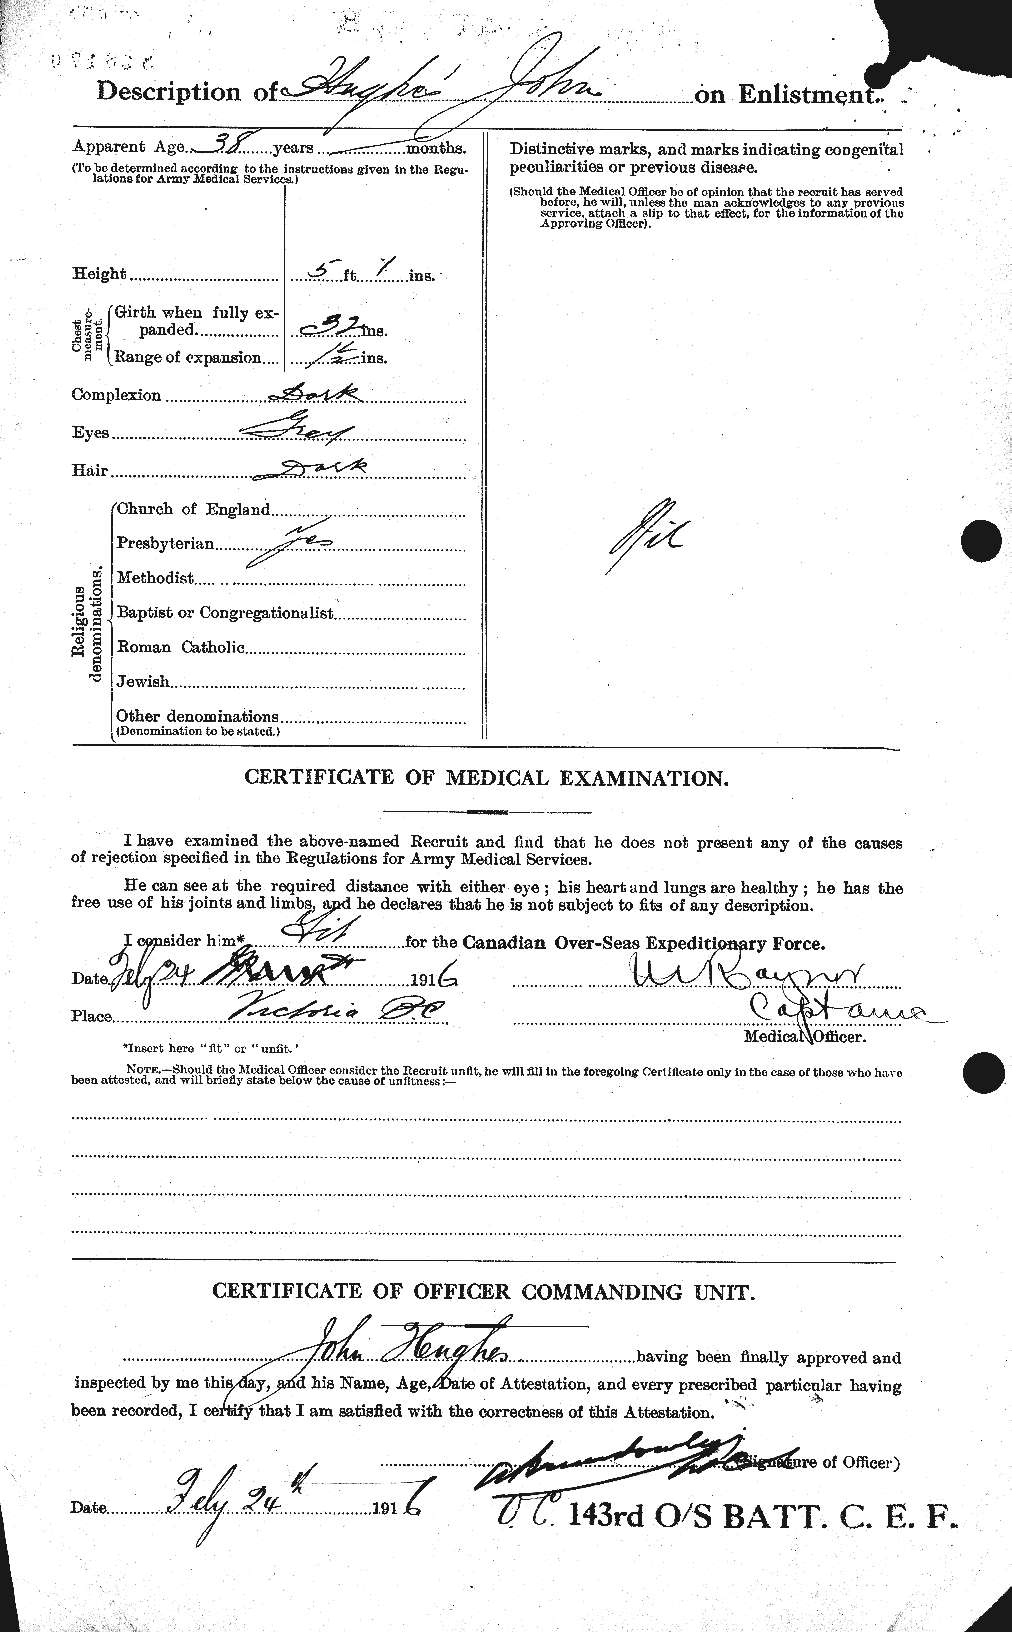 Dossiers du Personnel de la Première Guerre mondiale - CEC 403981b